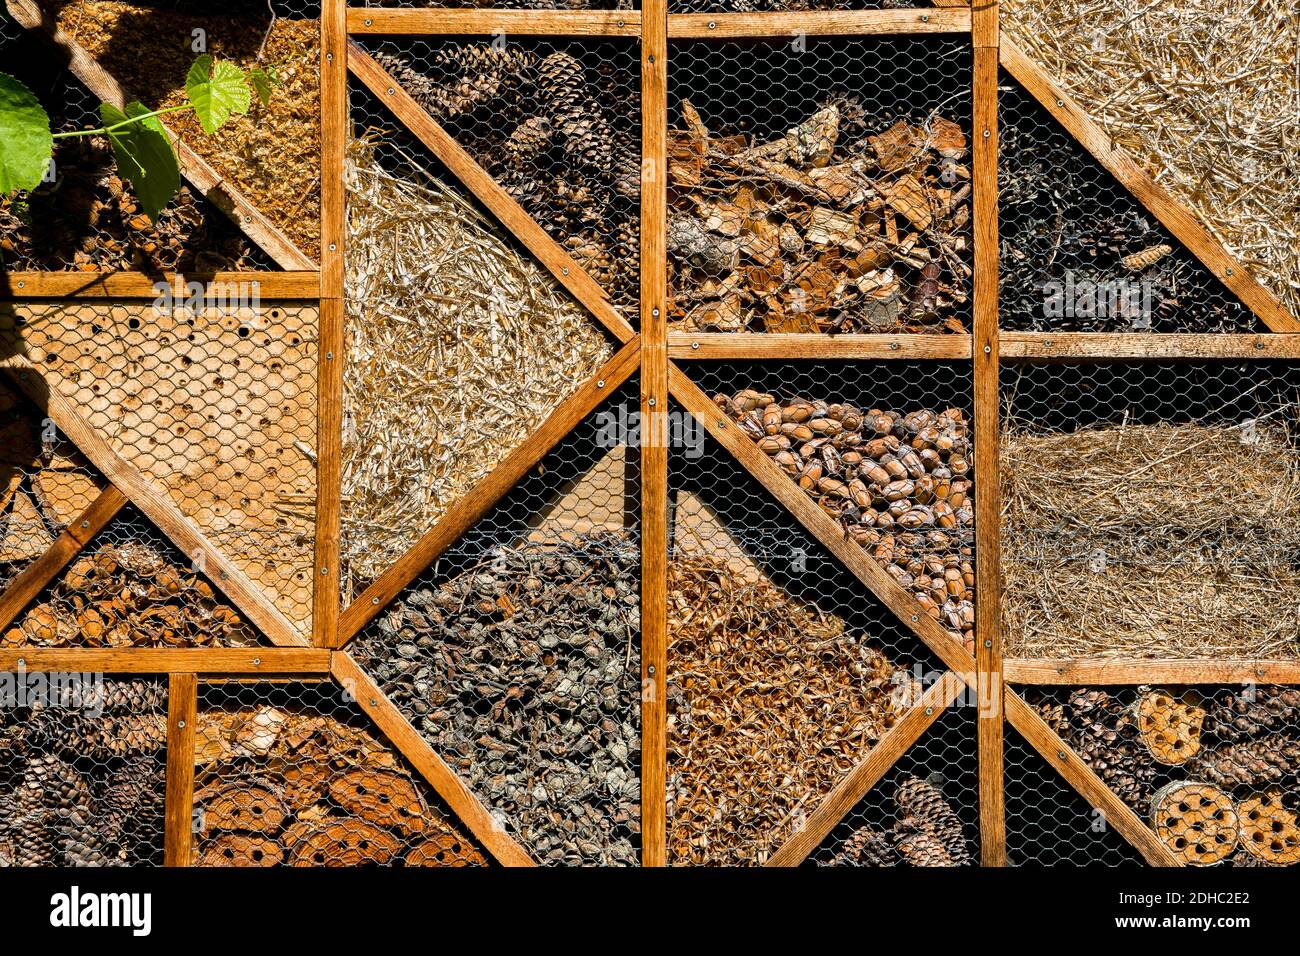 Insecto Hotel con compartimentos como refugio para los animales para mejorar Biodiversidad Foto de stock